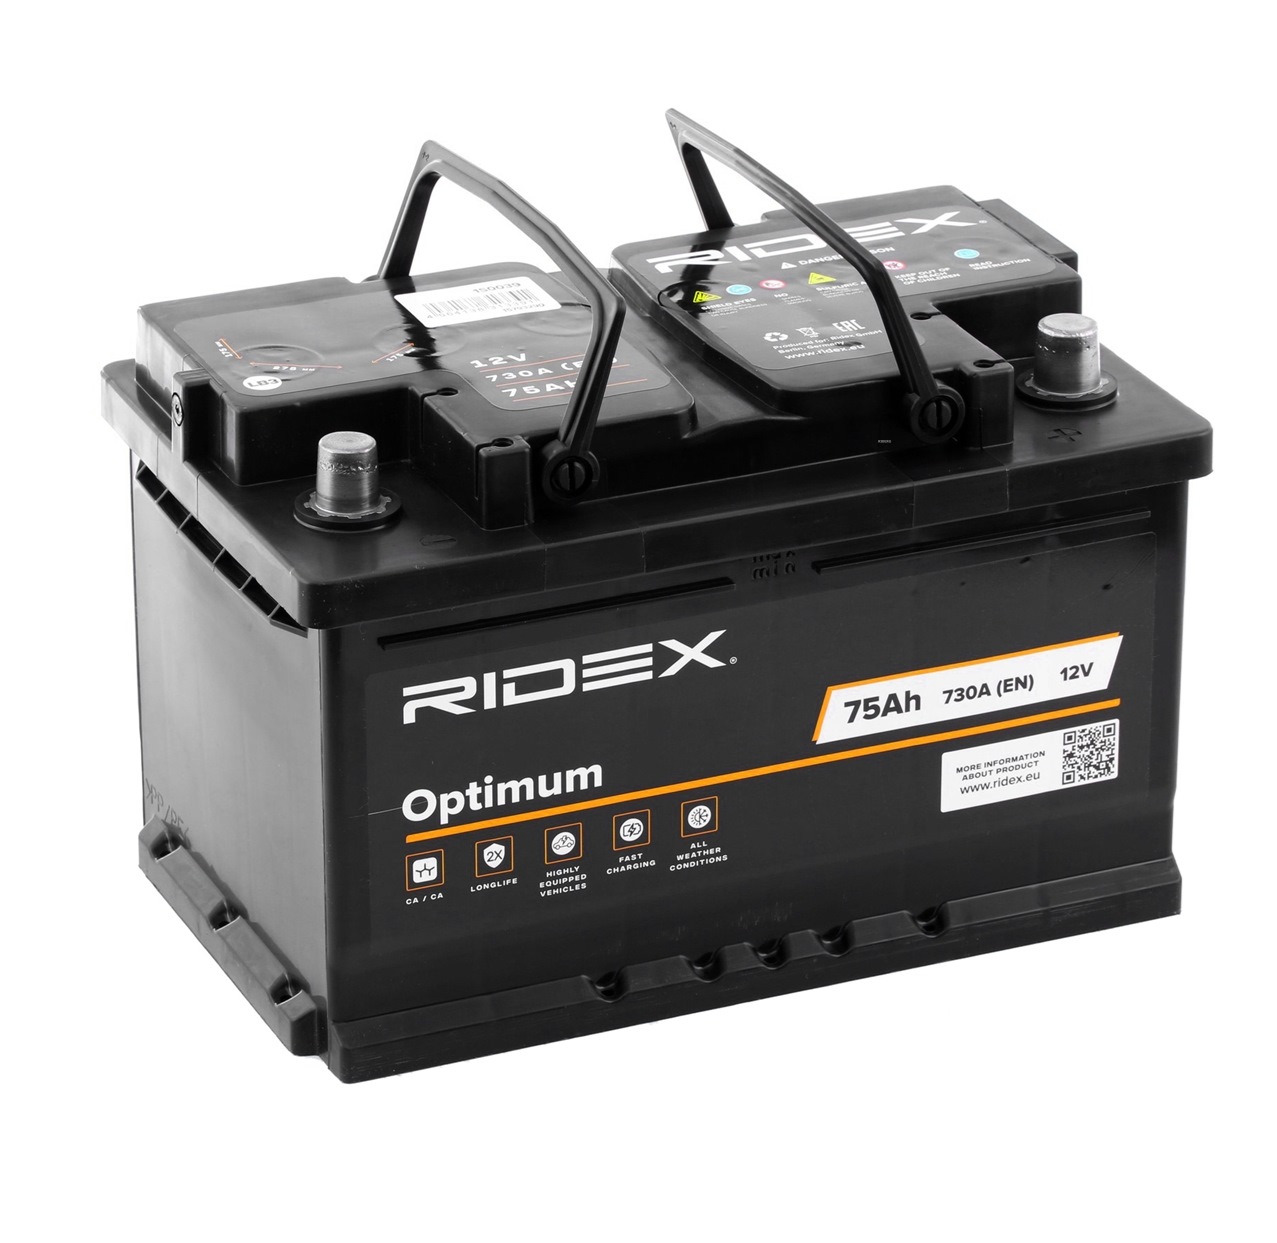 1S0039 RIDEX 12V 75Ah 730A B13 Bleiakkumulator, mit Handgriffen, ohne Füllstandanzeige Kälteprüfstrom EN: 730A, Spannung: 12V Starterbatterie 1S0039 günstig kaufen